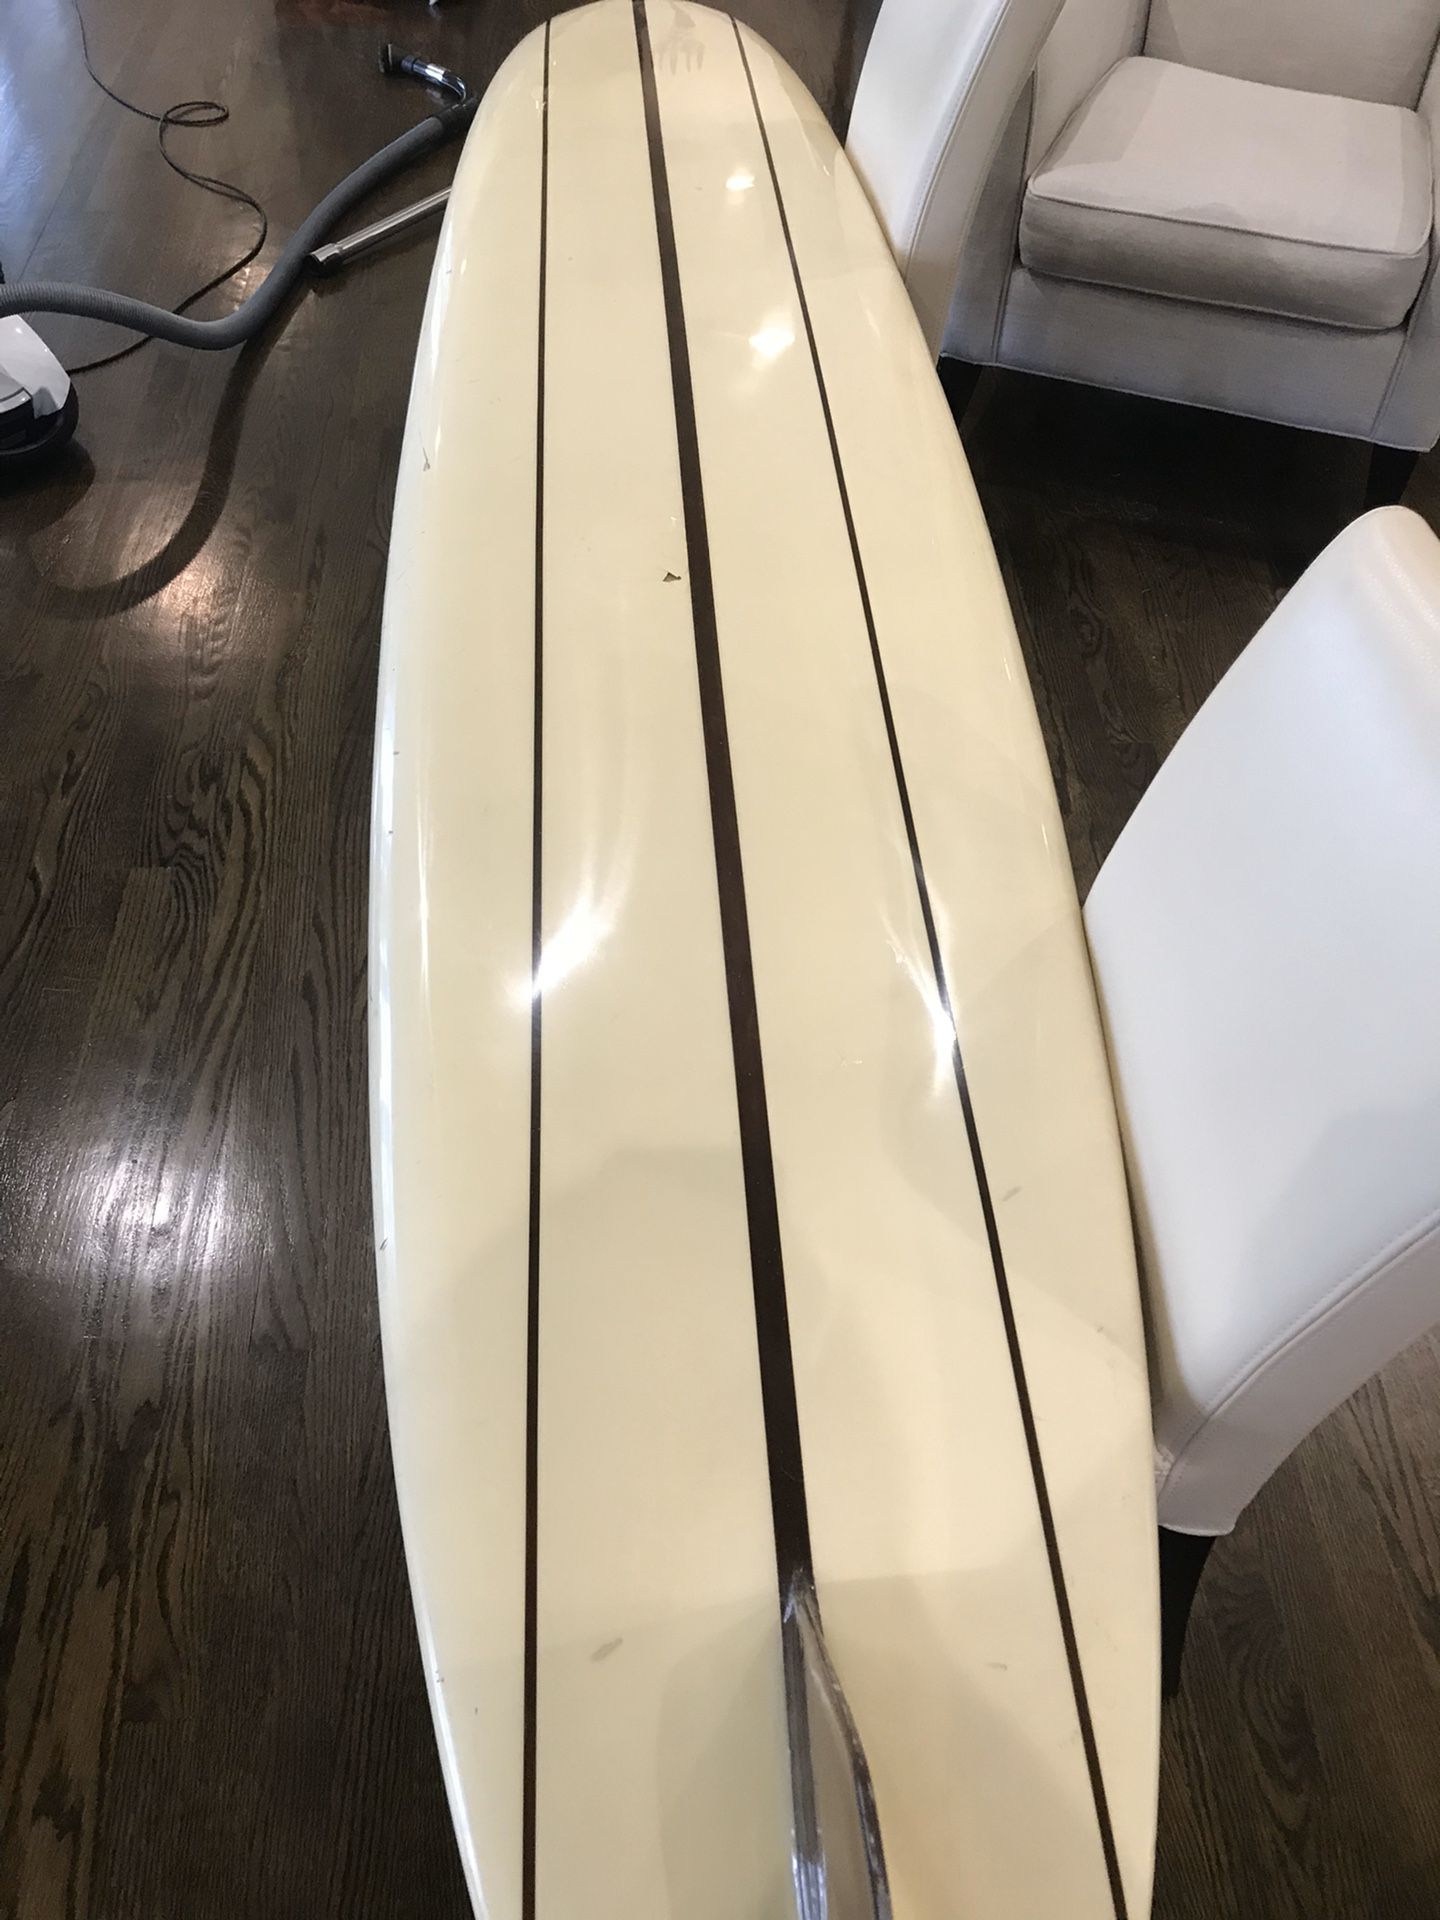 Vintage wardy surfboard